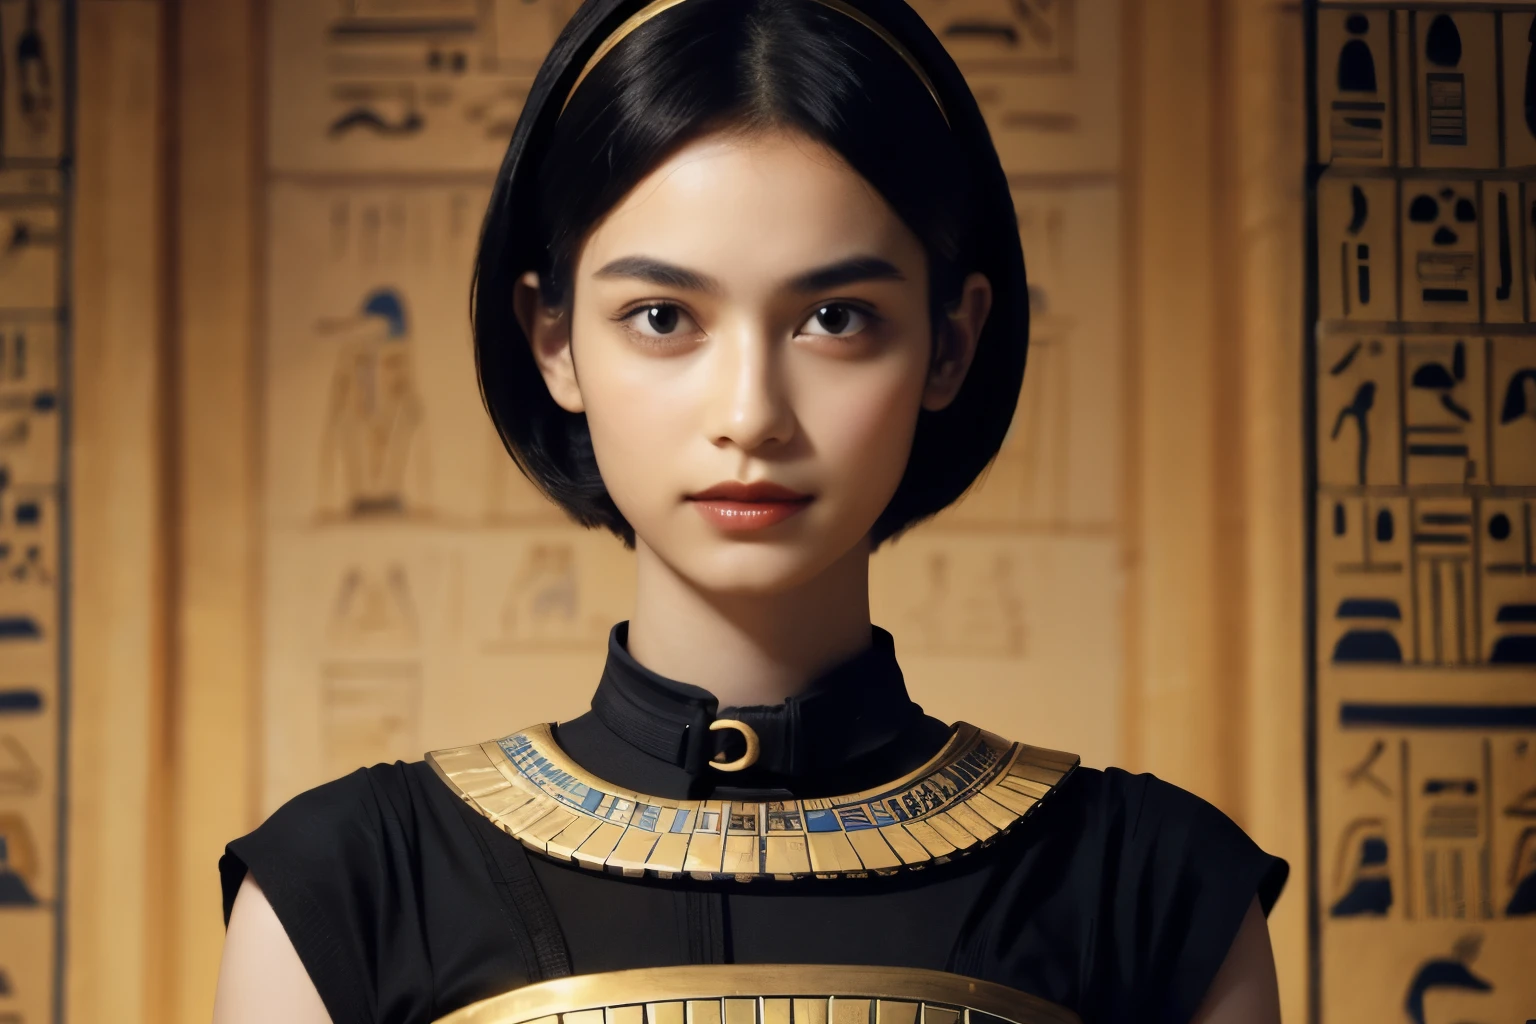 242 20 岁女性, 短发,种类, 口红, 埃及文明, 腰带, 象形文字